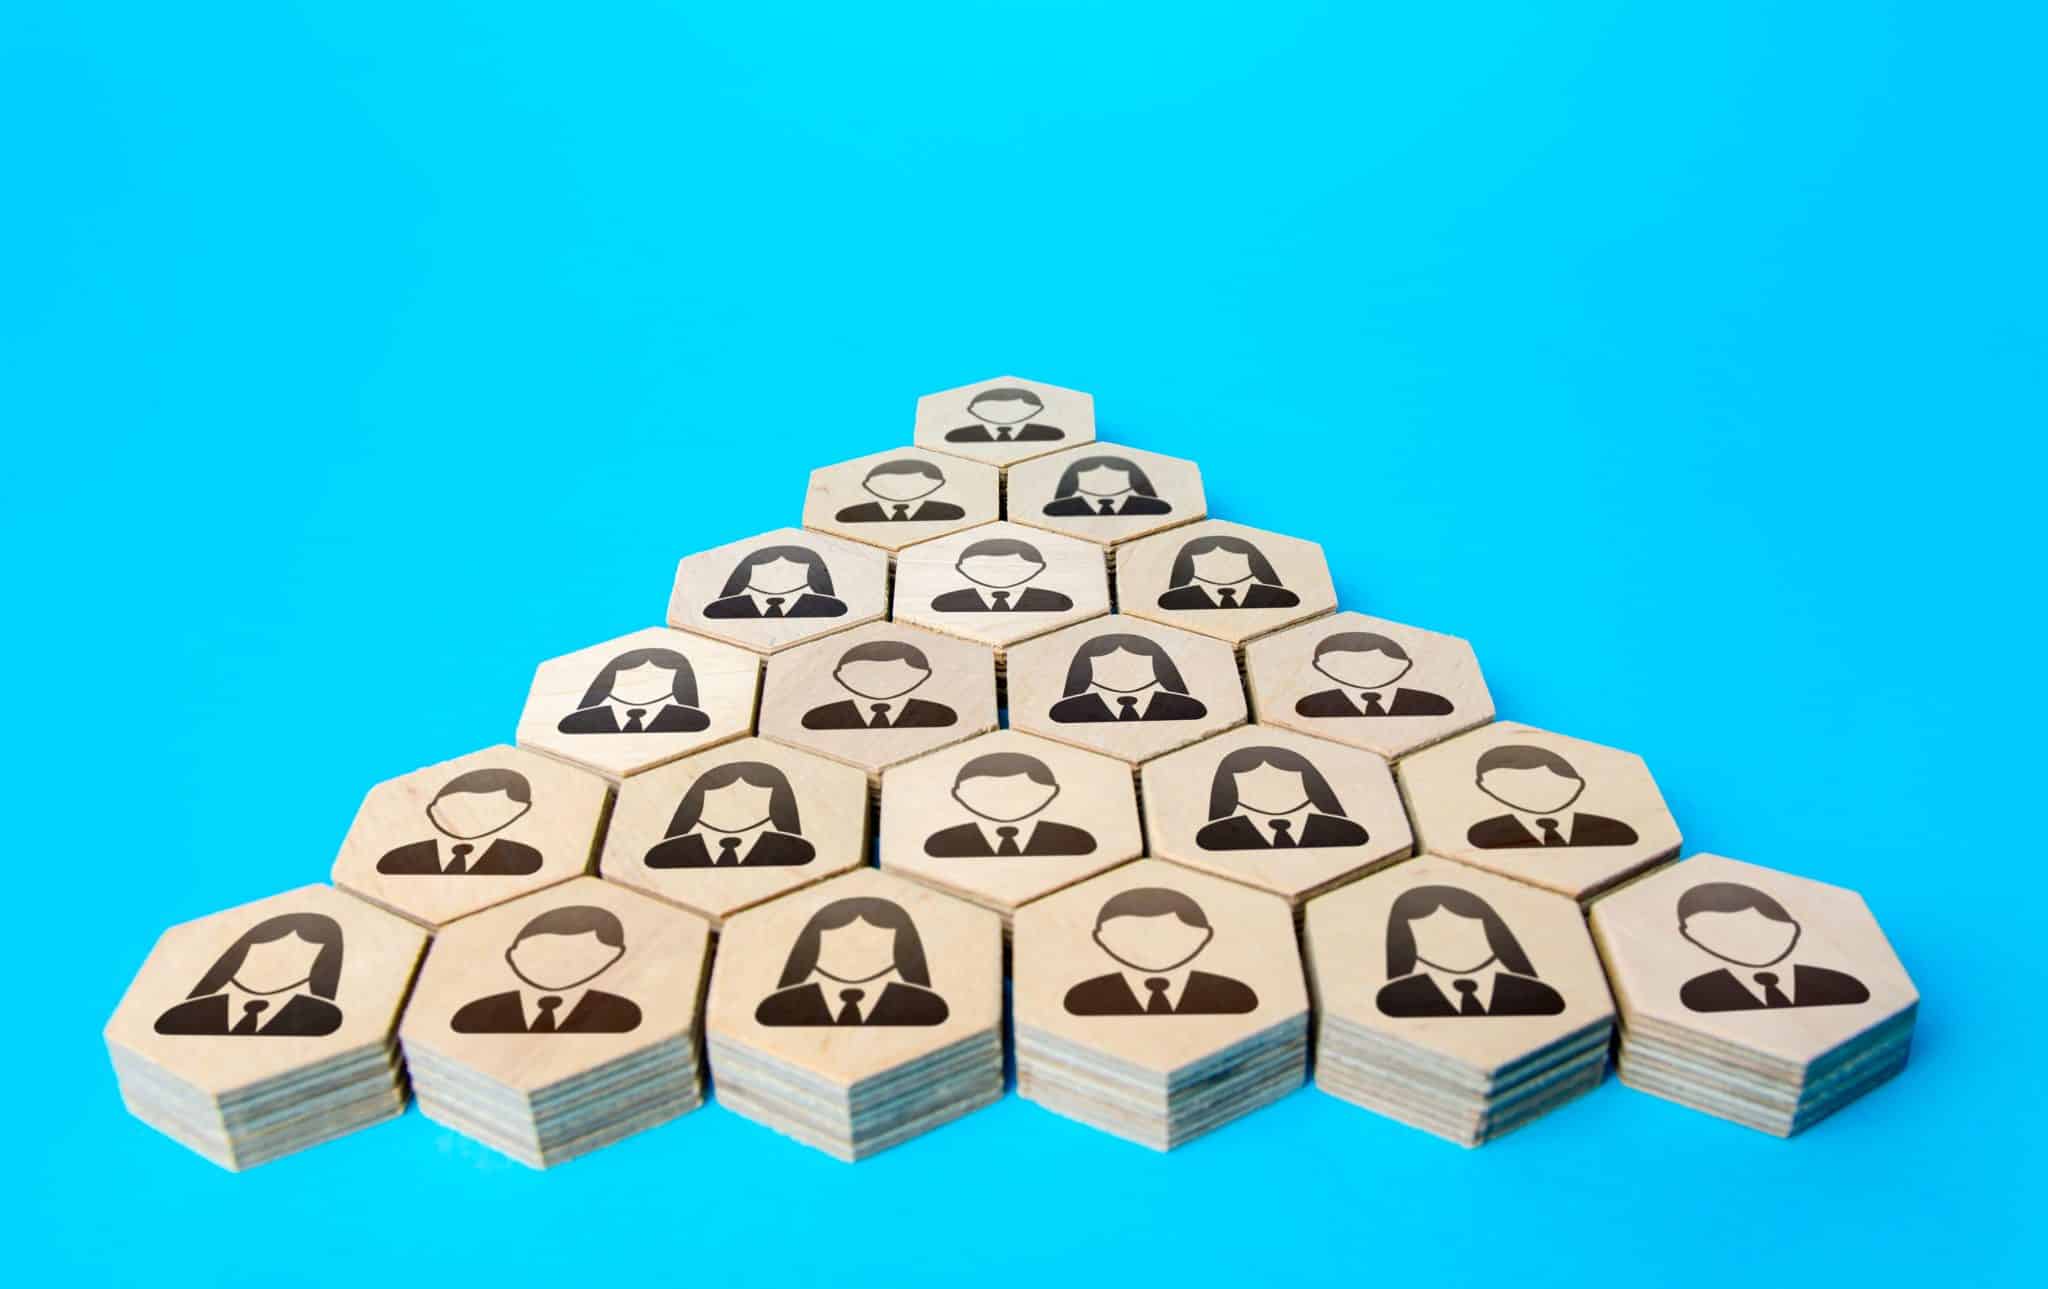 La pyramide de Maslow : une invention révolutionnaire dédiée au monde de l’entreprise